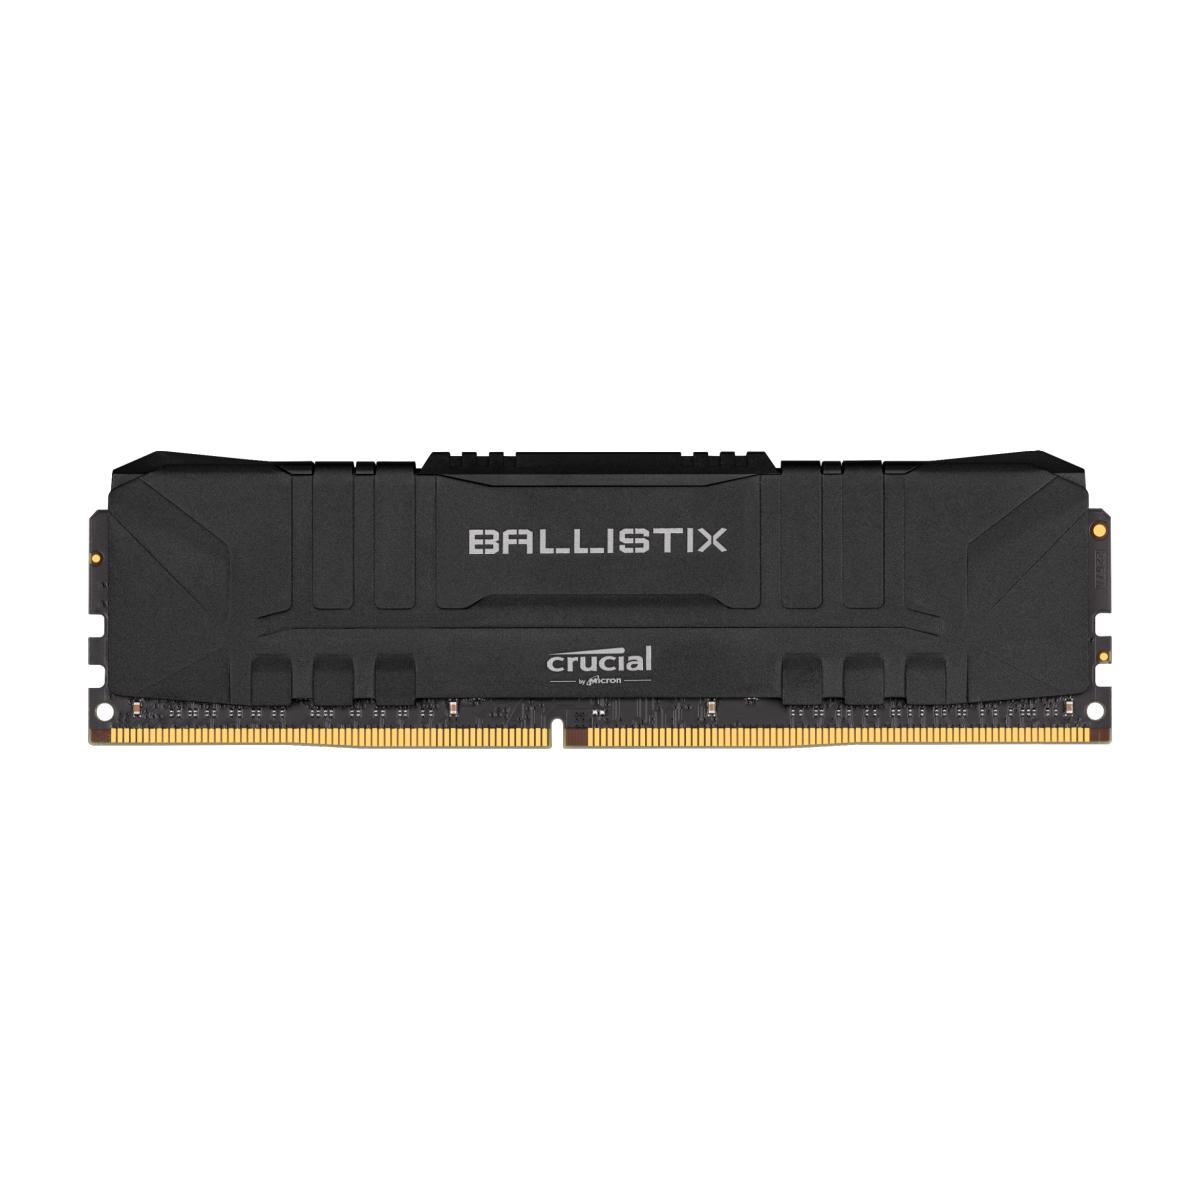 MEMORIA DIMM DDR4 CRUCIAL BALLISTIX (BL8G30C15U4B) 8GB 3000MHZ, BLACK HEATSINK, CL15 - BL8G30C15U4B